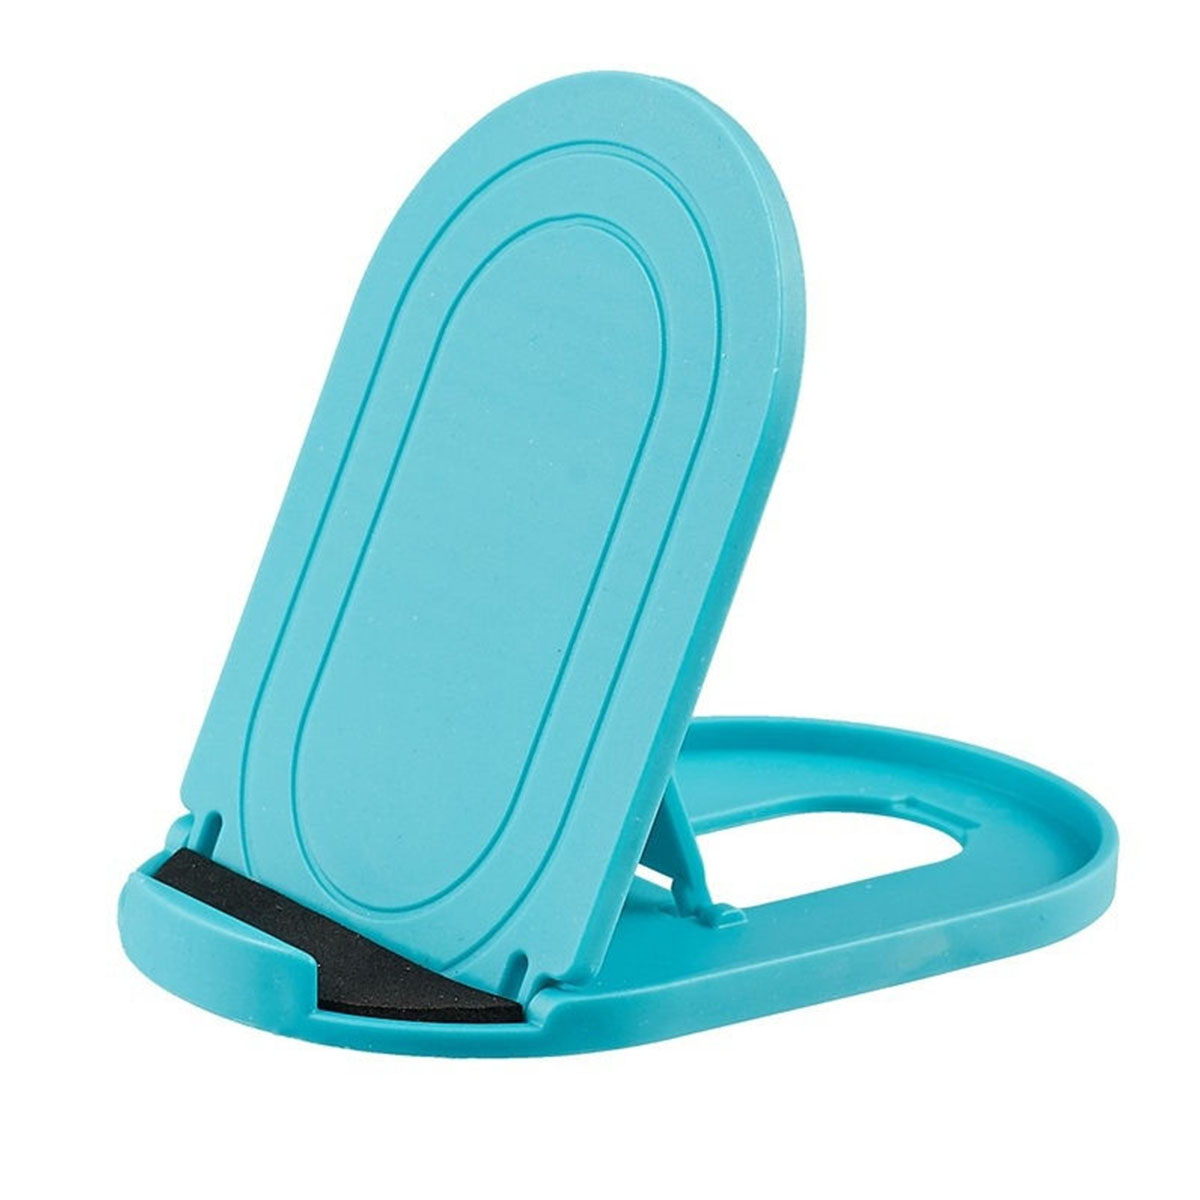 Настольная подставка, держатель Folding Stents для телефона, смартфона, цвет голубой